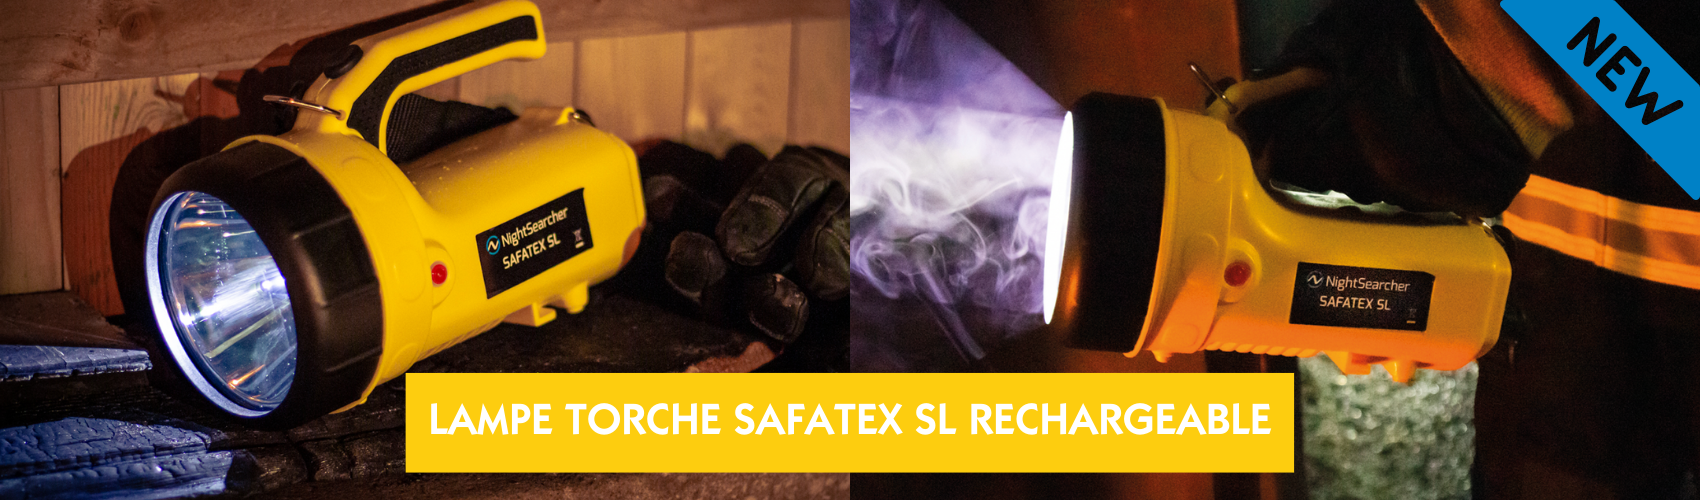 NOUVEAUTÉ PRODUIT _ LAMPE TORCHE SAFATEX SL RECHARGEABLE